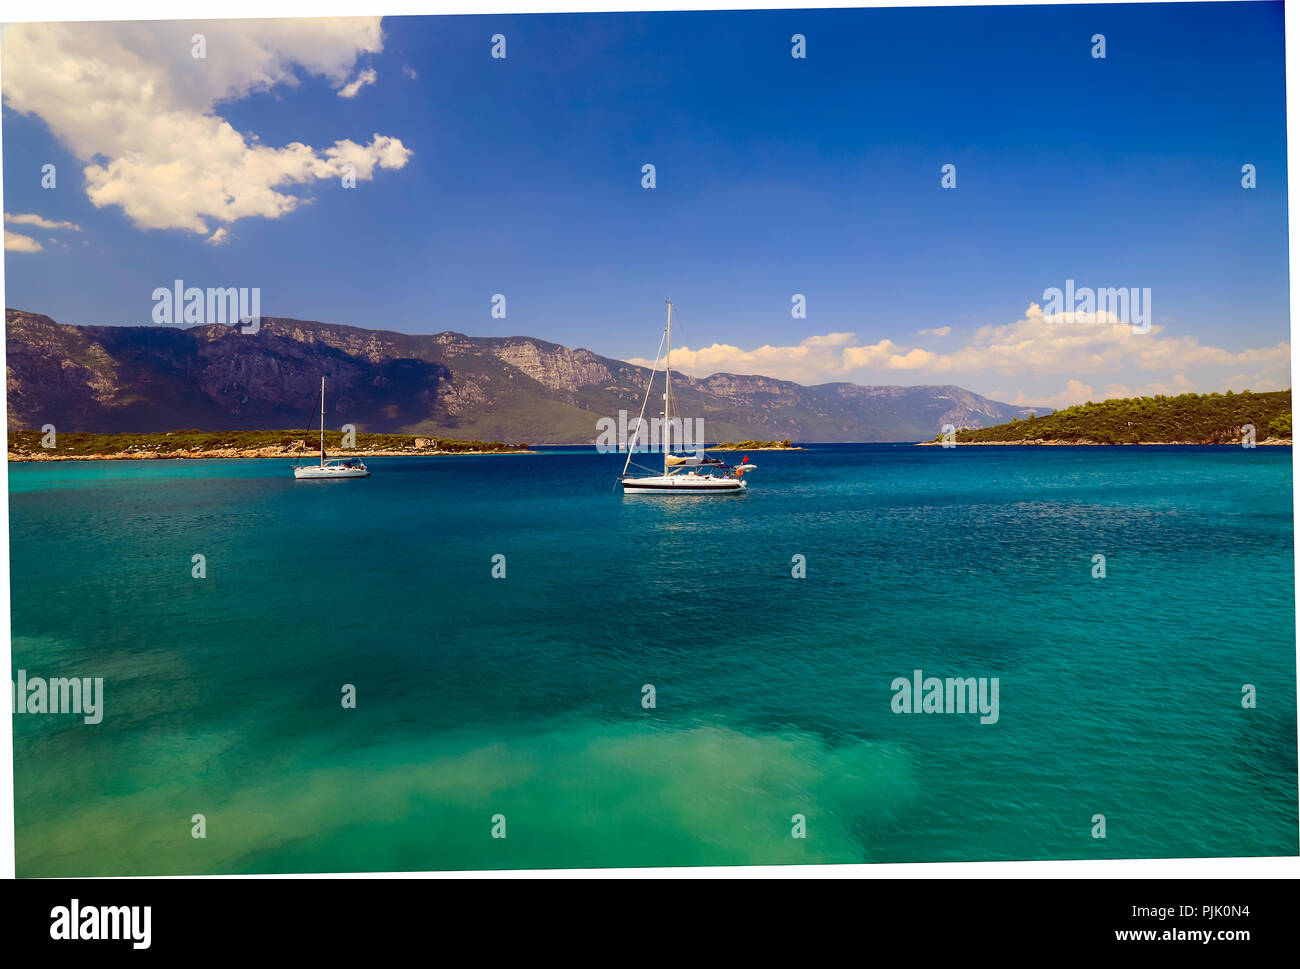 La vue pittoresque sur la mer сoast en Turquie, près de Bodrum et Marmaris - un bel endroit pour faire des excursions, voyages, loisirs et vacances. Banque D'Images